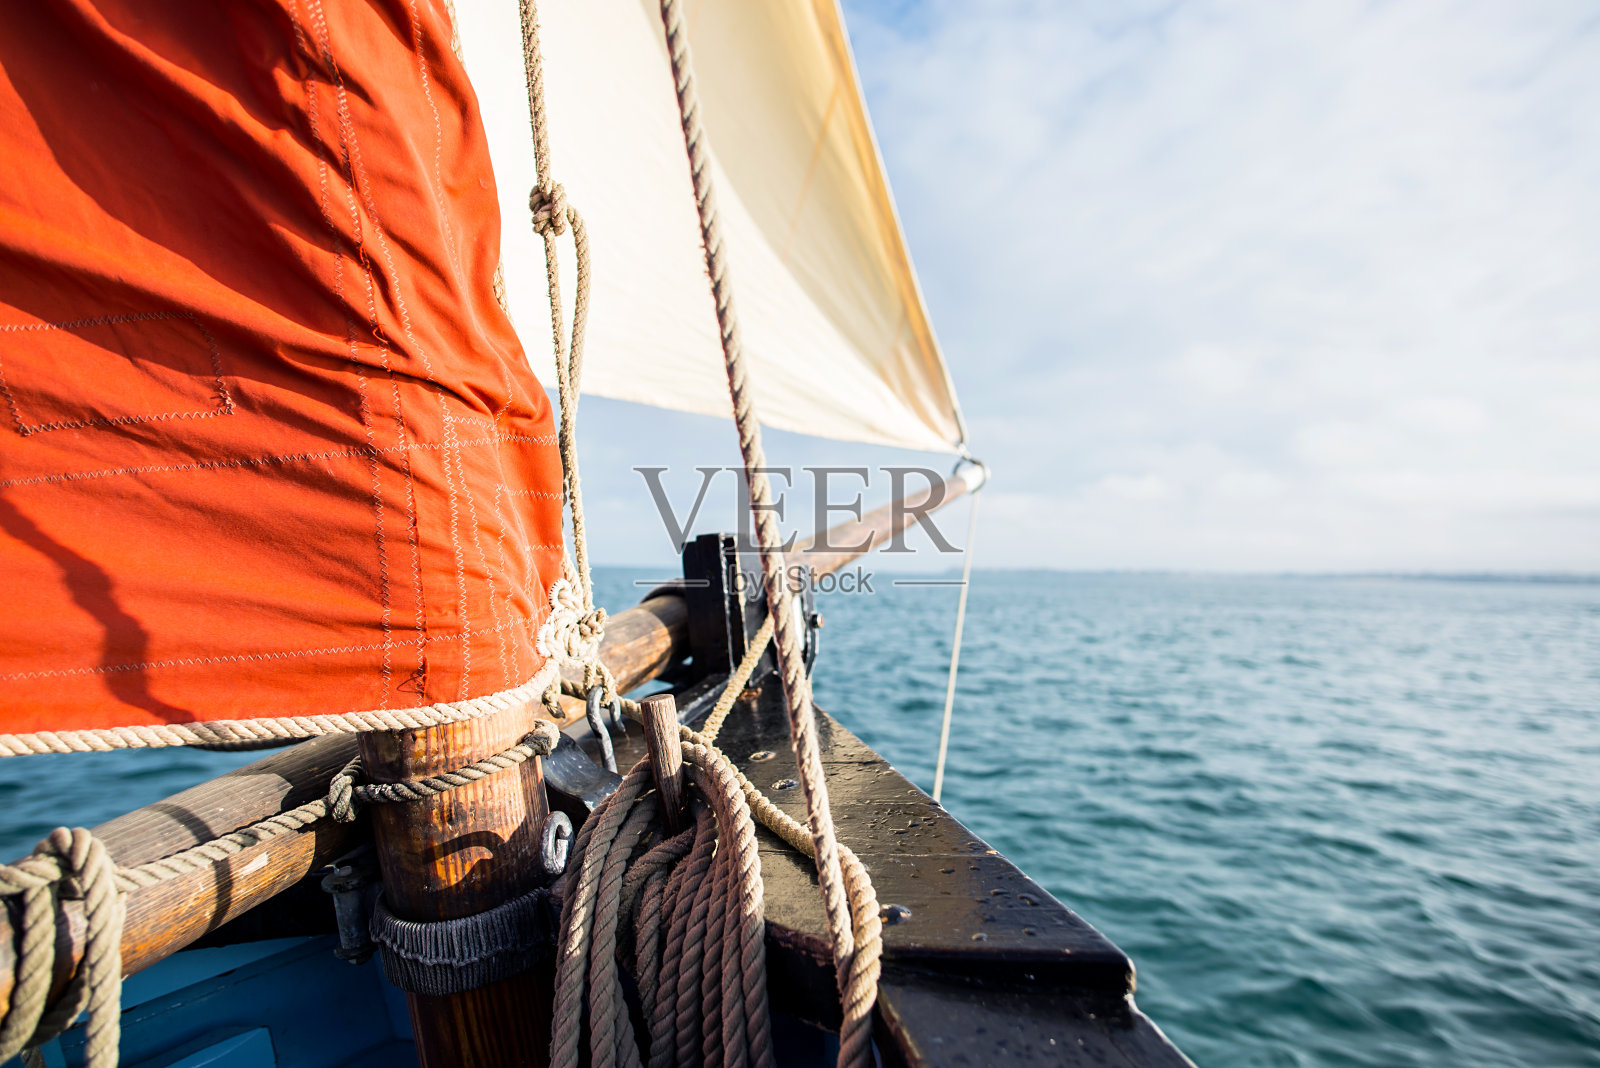 缠绕在木夹板上的绳子固定在一艘有米色三角帆和赭色帆的老式帆船的船体上照片摄影图片